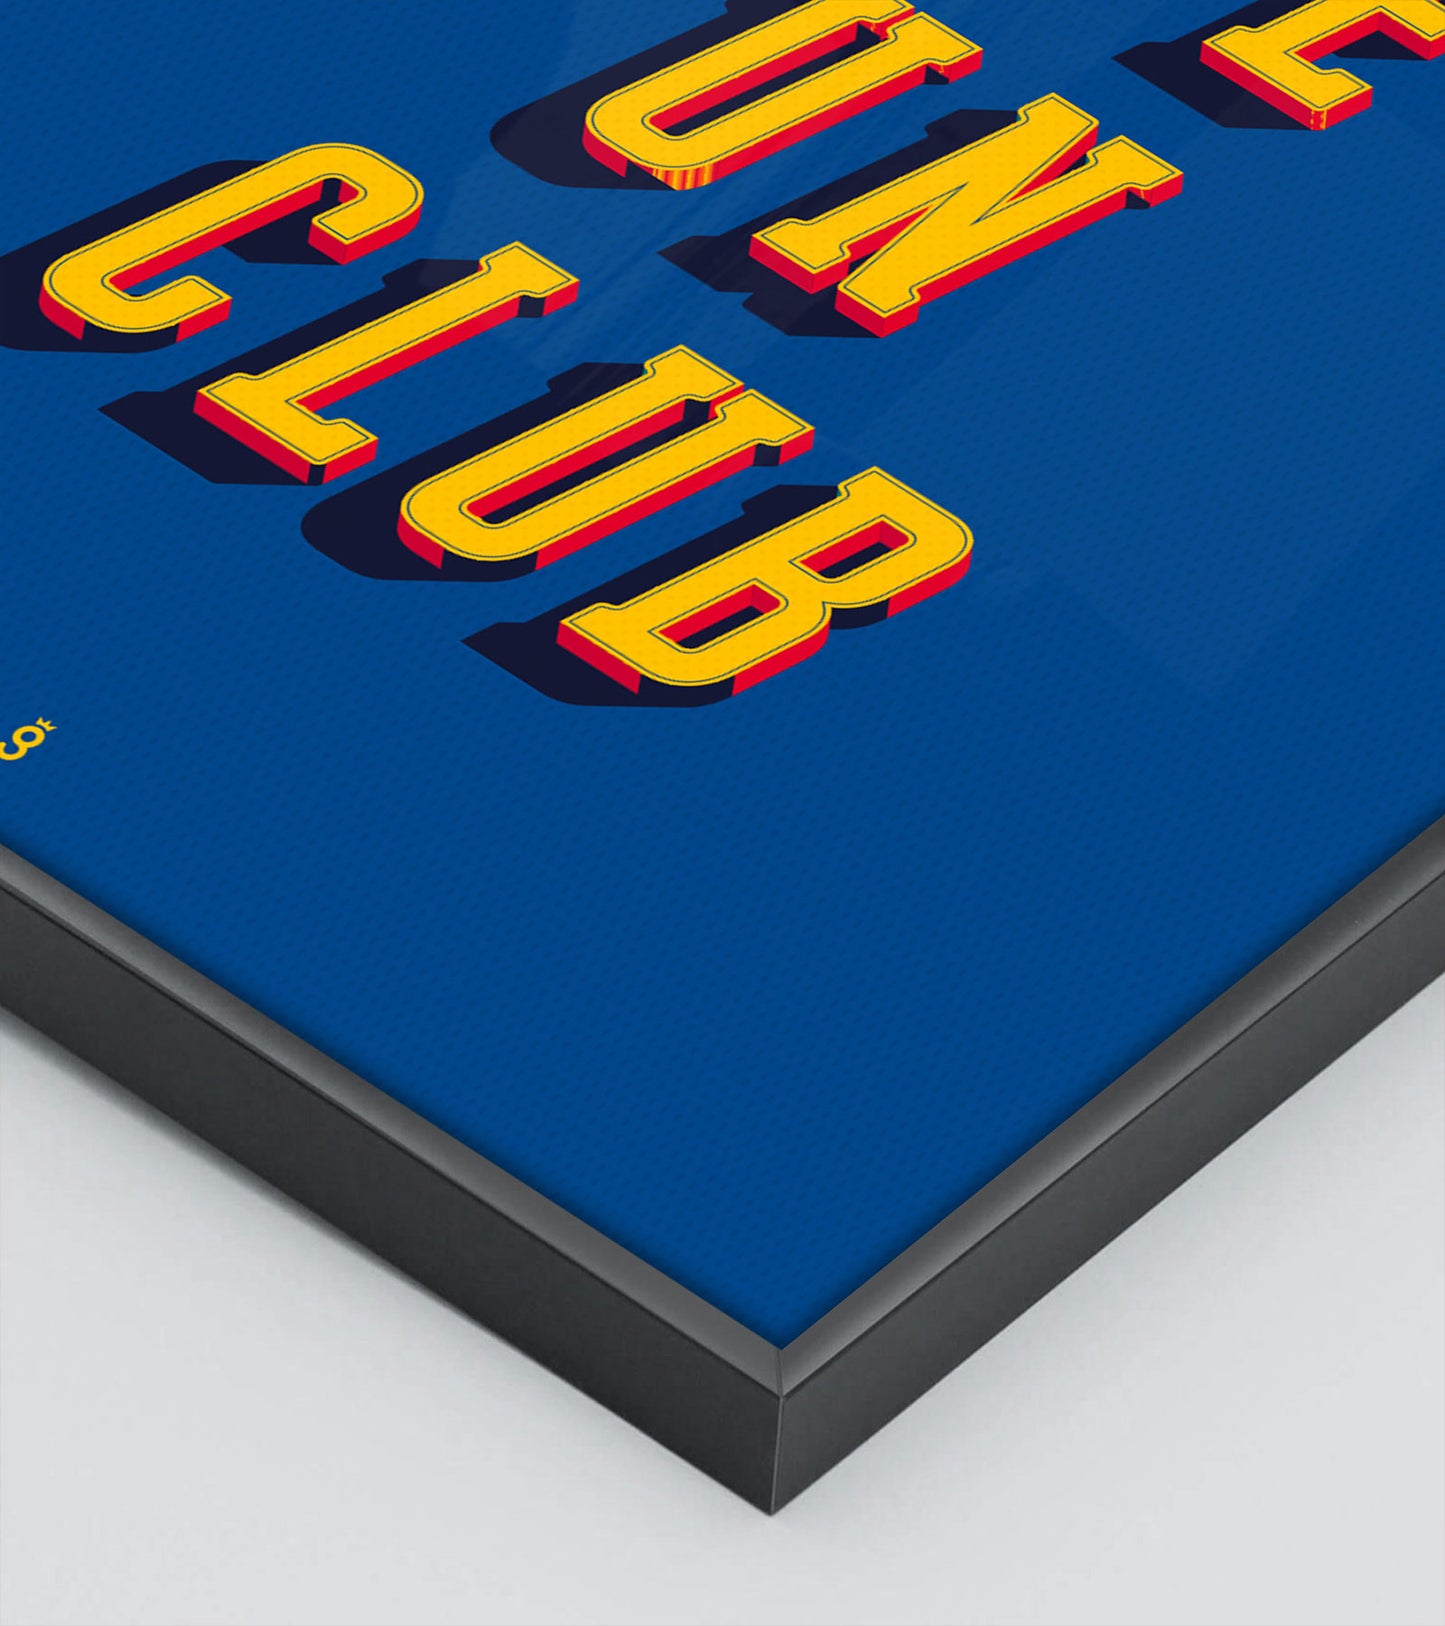 "Més Que Un Club" Poster